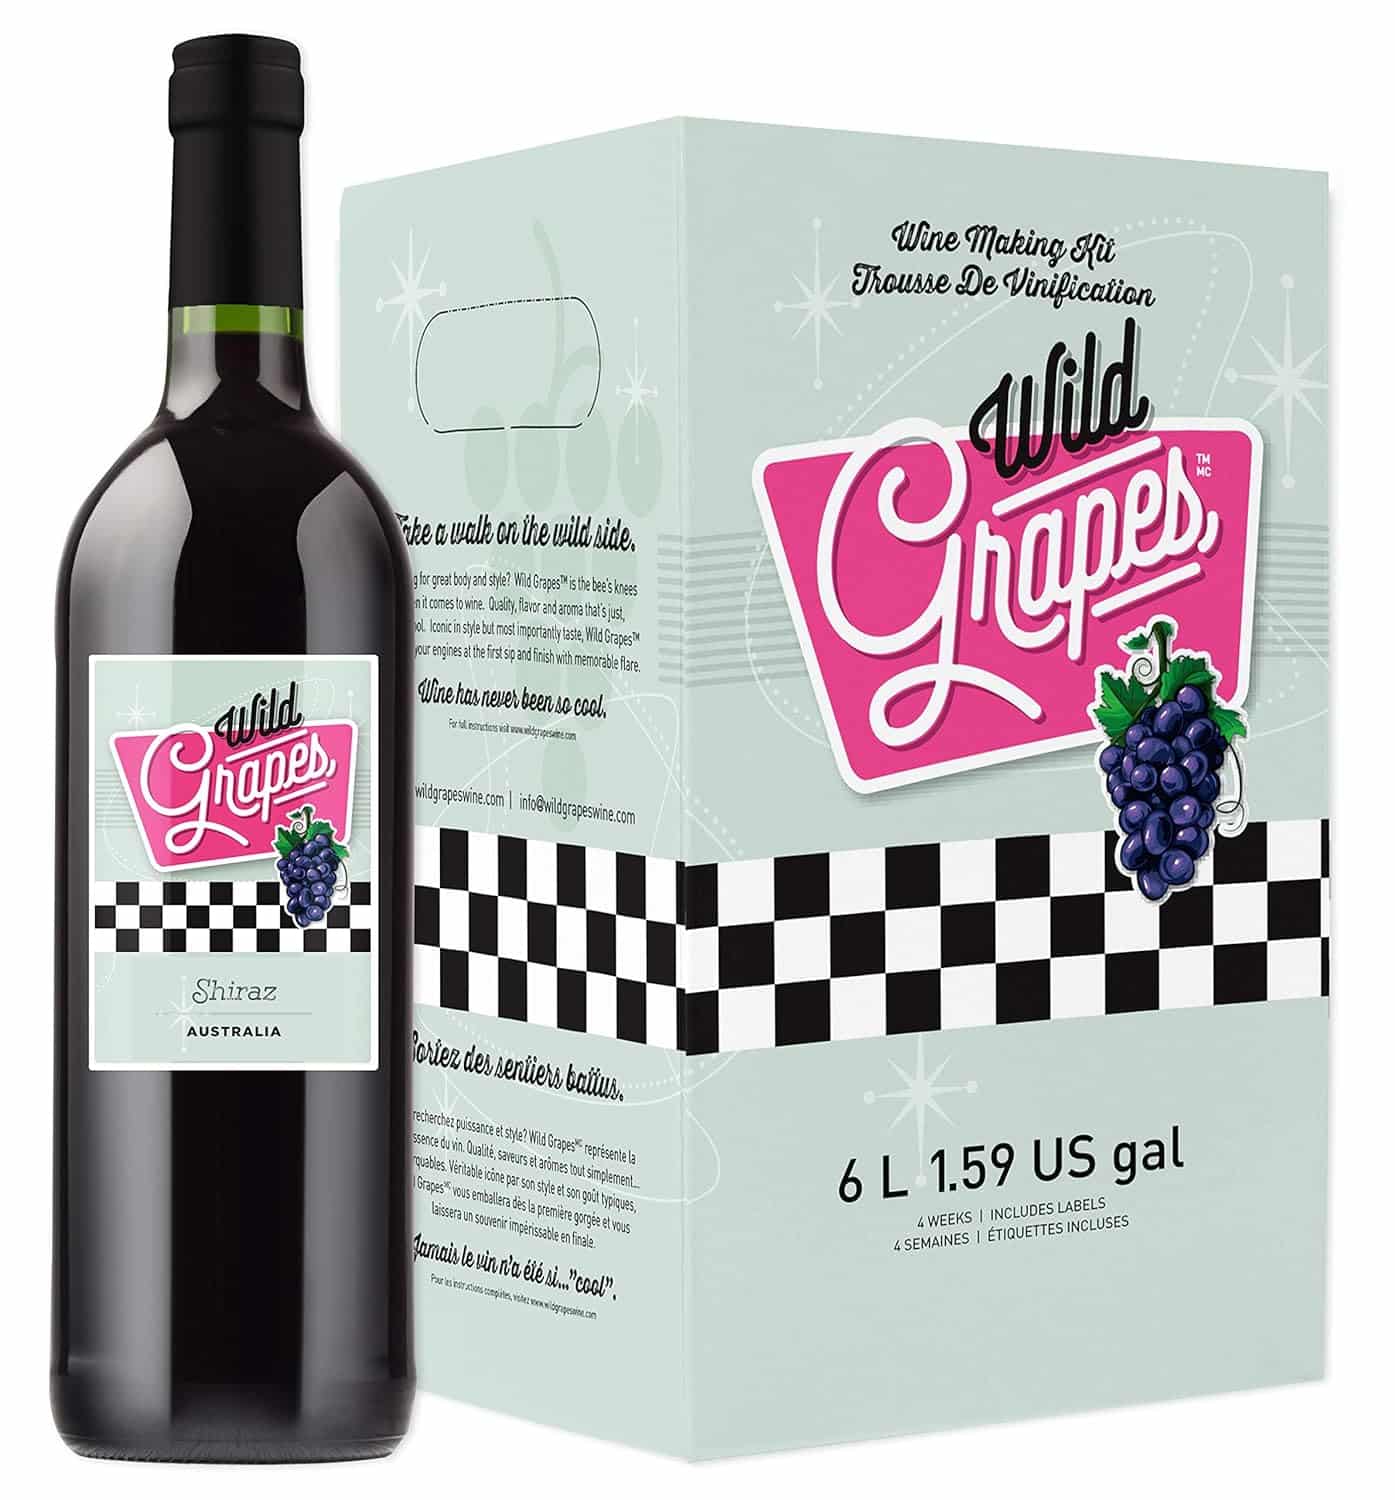 Wild Grapes Premium DIY Wine Making Kits - Australia Shiraz Review